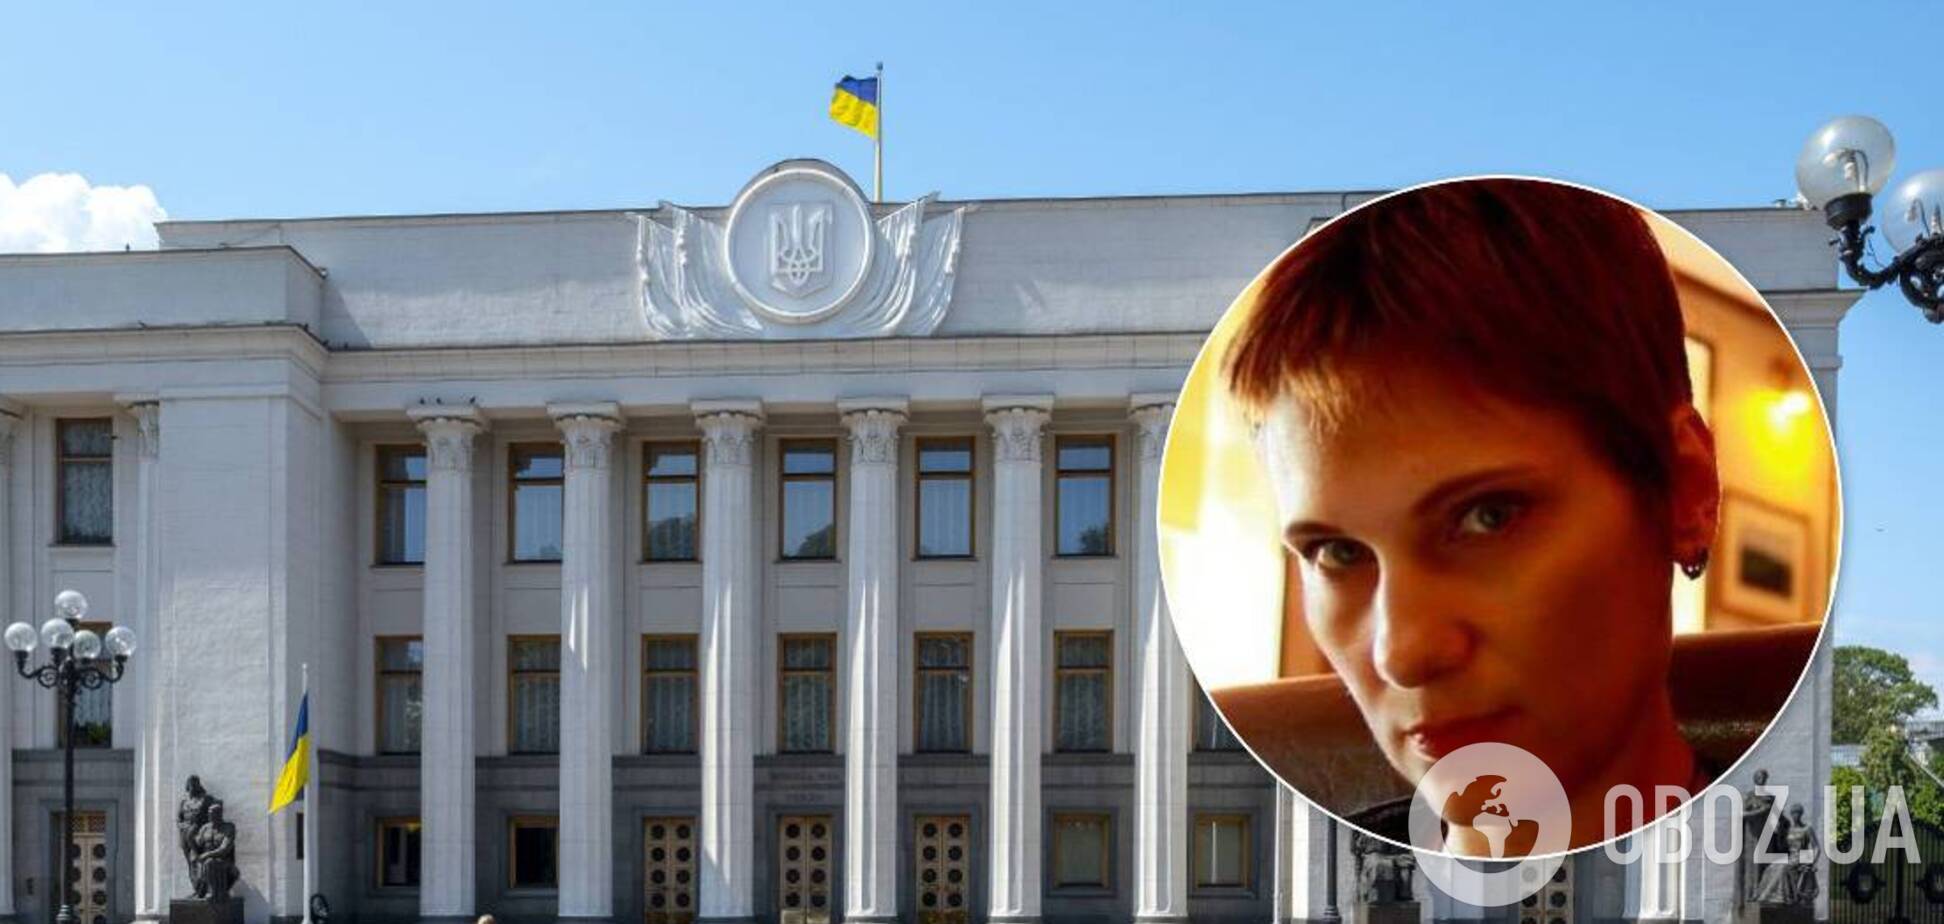 Экс-помощница нардепа угодила в скандал из-за оскорбления украинцев